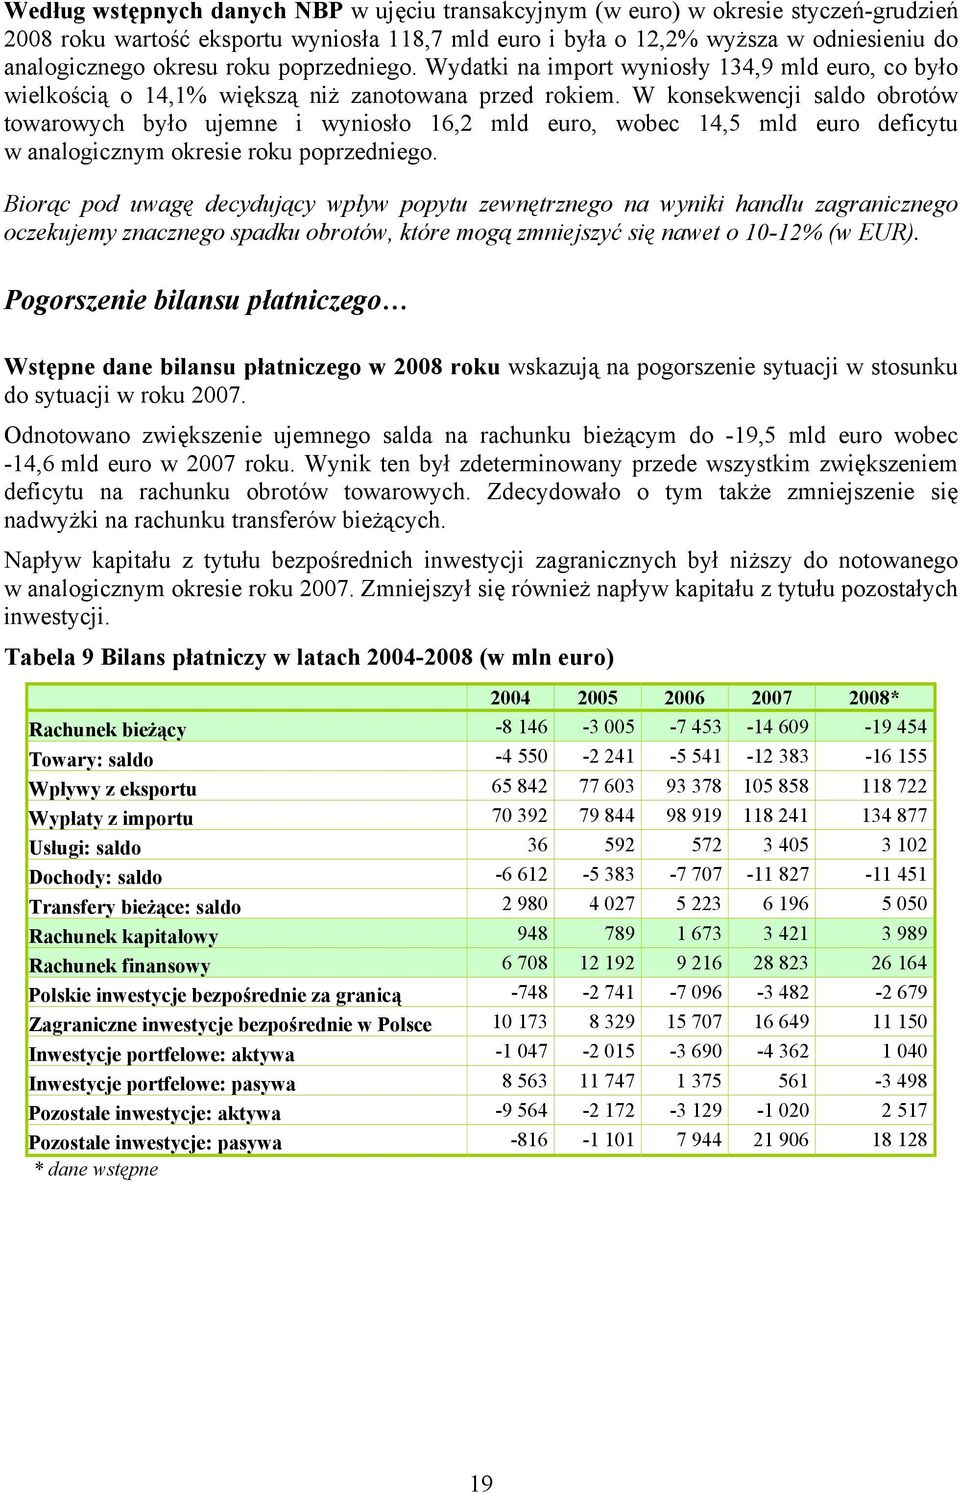 W konsekwencji saldo obrotów towarowych było ujemne i wyniosło 16,2 mld euro, wobec 14,5 mld euro deficytu w analogicznym okresie roku poprzedniego.